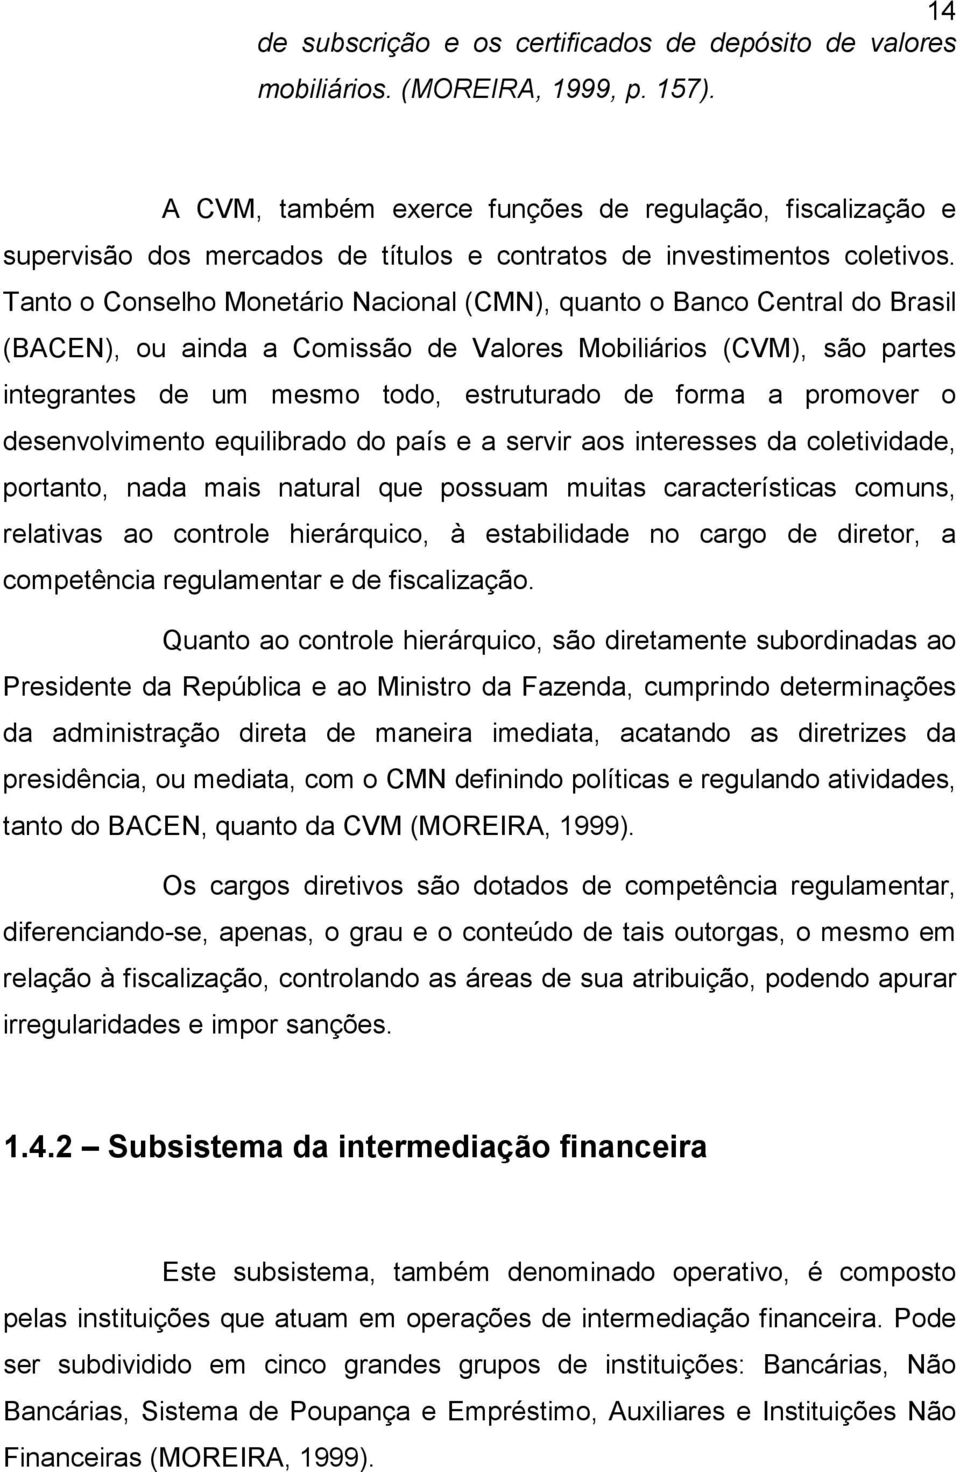 Tanto o Conselho Monetário Nacional (CMN), quanto o Banco Central do Brasil (BACEN), ou ainda a Comissão de Valores Mobiliários (CVM), são partes integrantes de um mesmo todo, estruturado de forma a